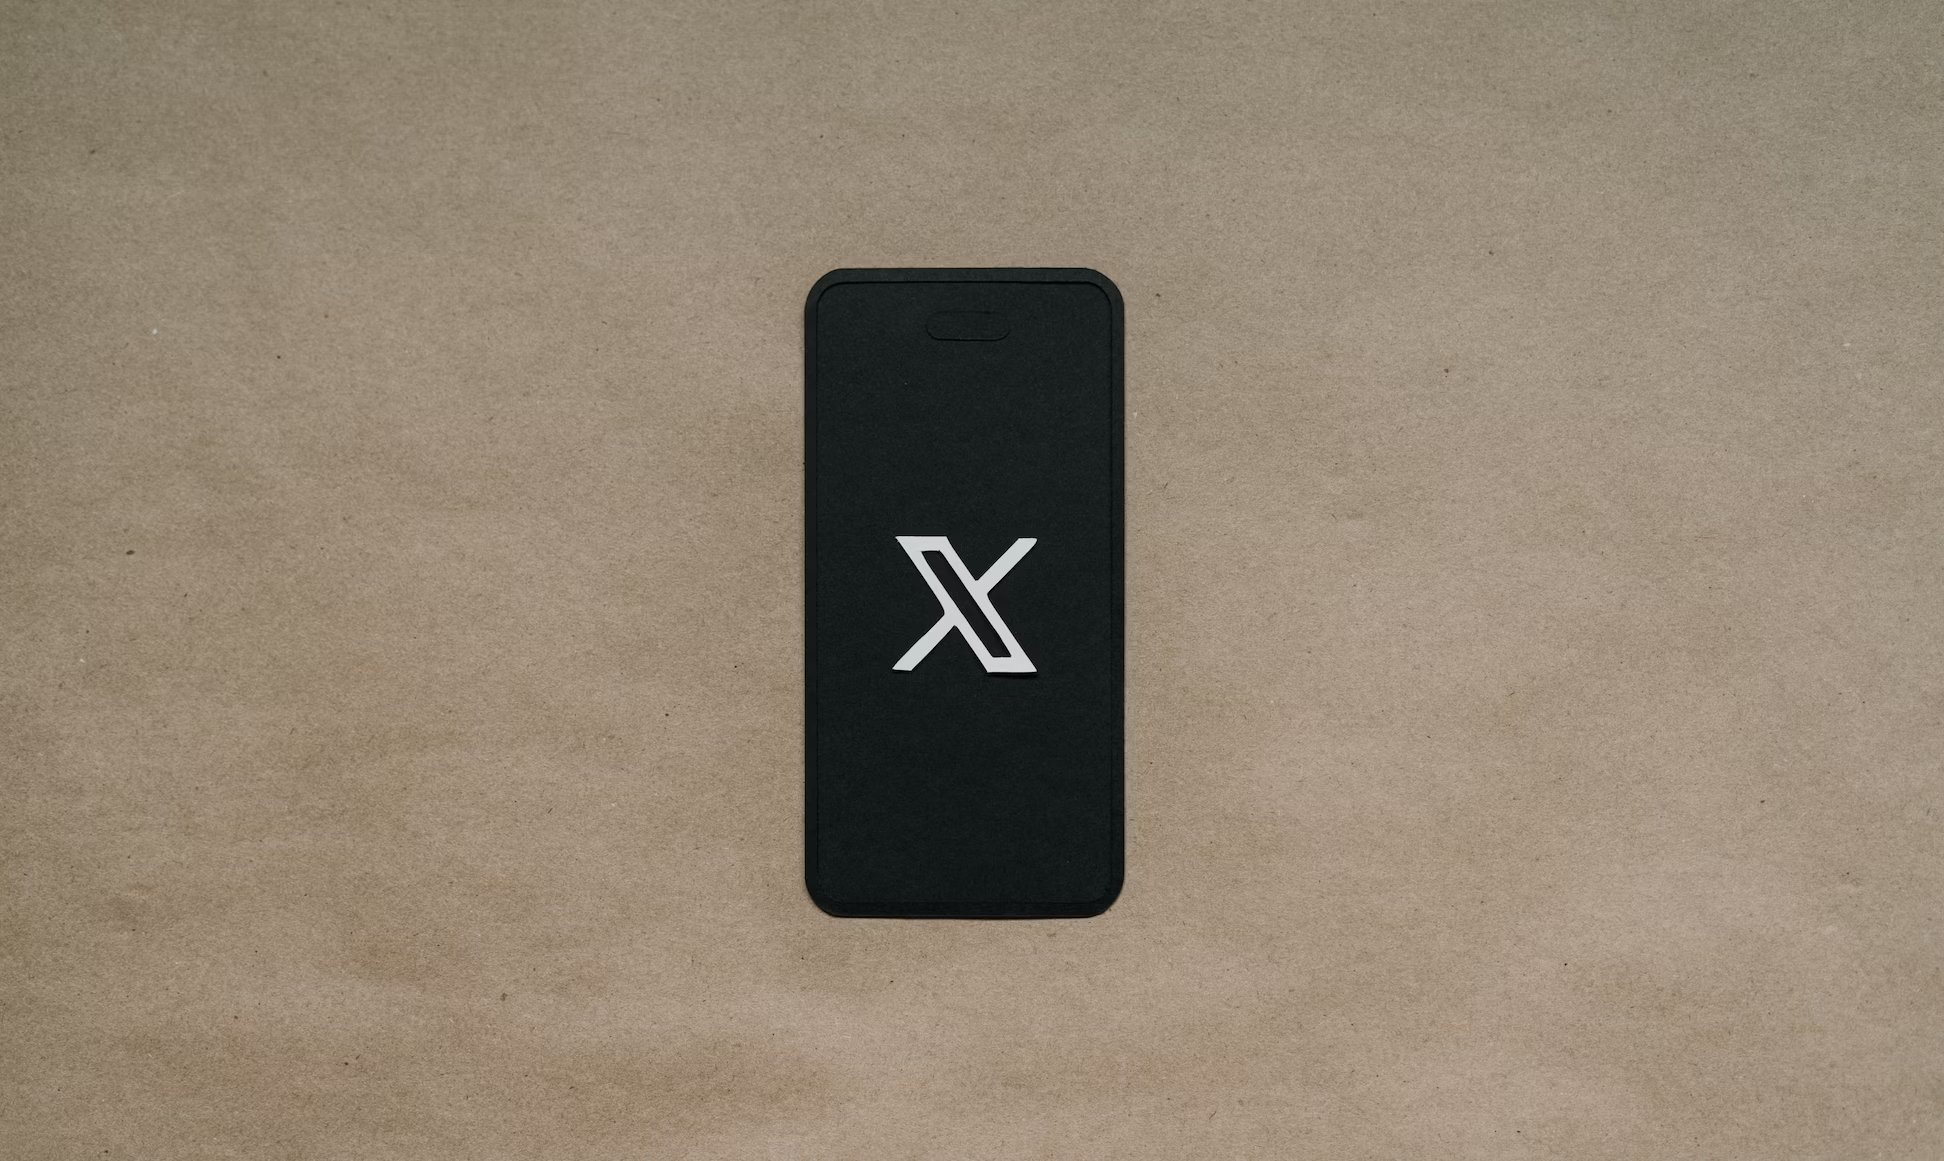 logo da X em smartphone